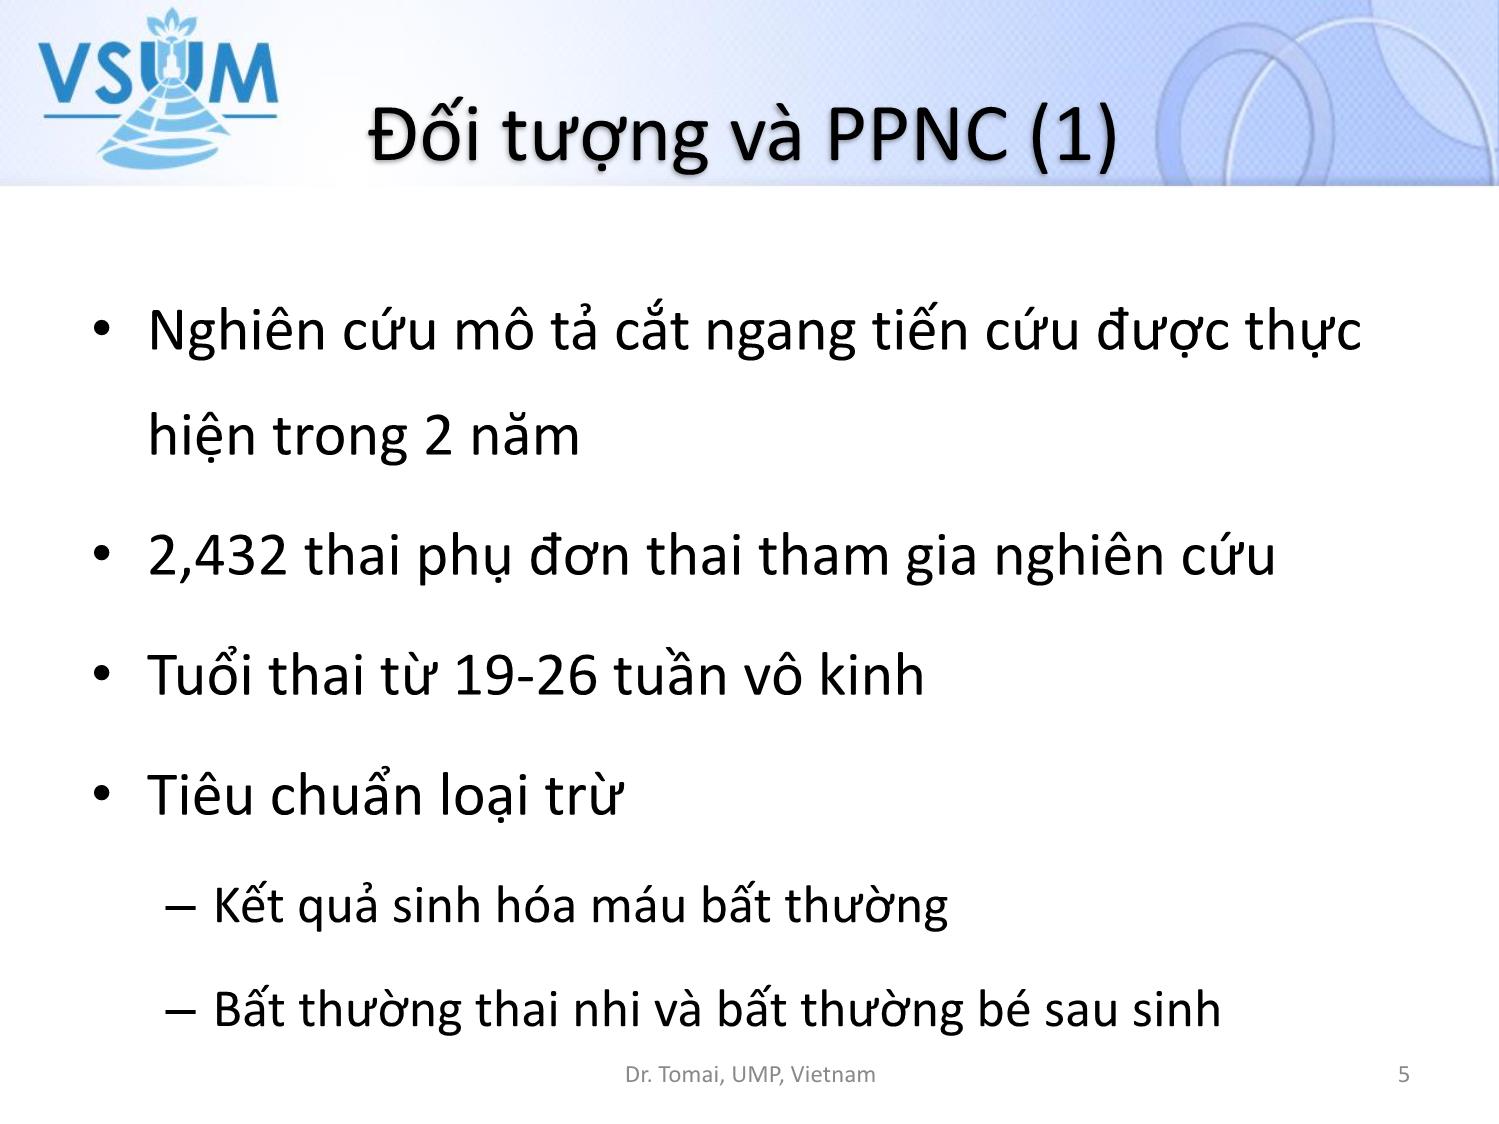 Y khoa - Chiều dài xương mũi thai nhi ở tuổi thai 19 - 26 tuần tại Việt Nam trang 5